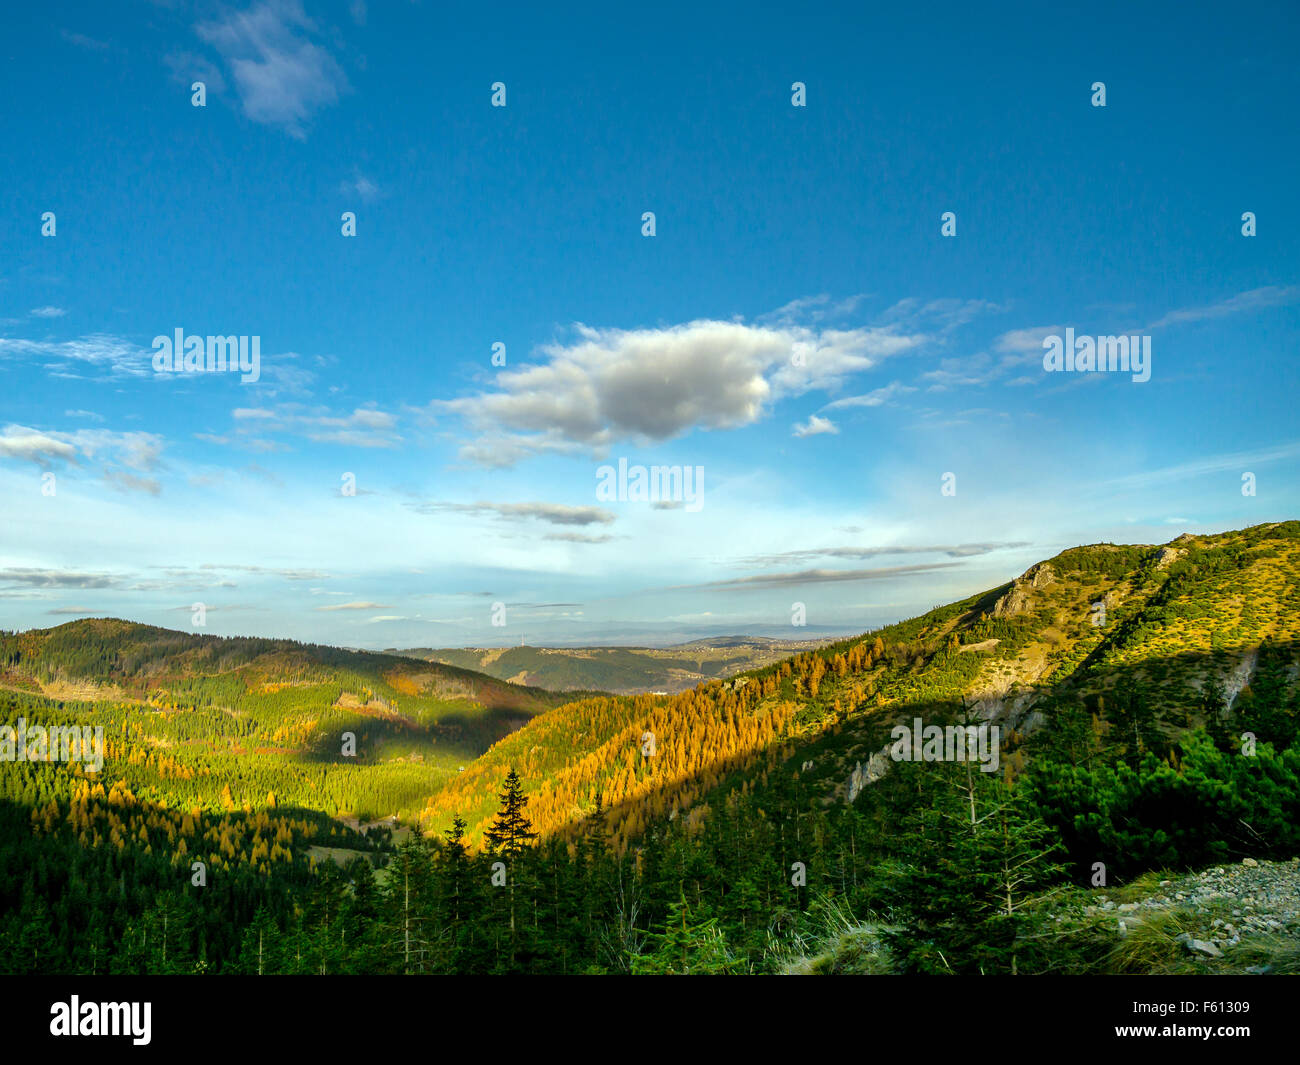 Belle vue sur les vallées et collines couvertes d'épinettes et de mélèzes vu depuis le sentier dans les Tatras, Pologne Banque D'Images